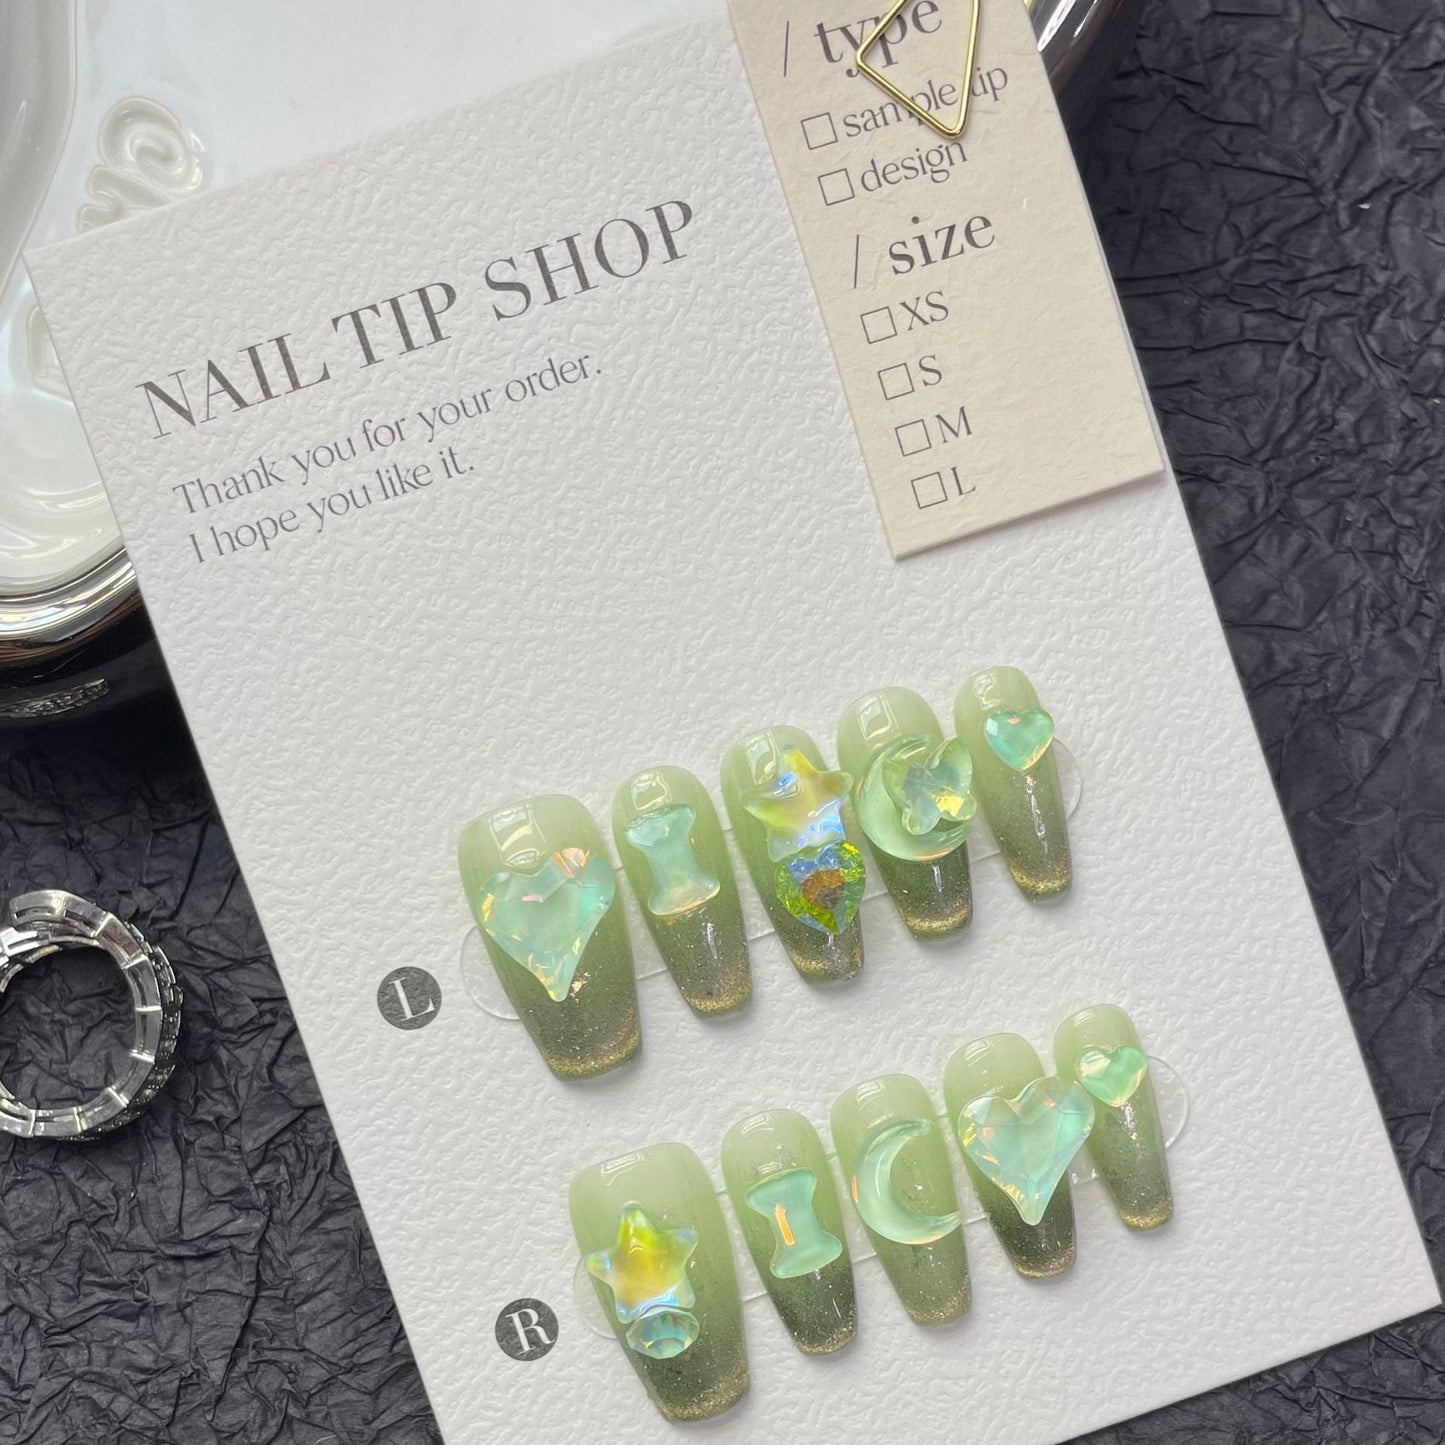 1229 The Wizard of Oz stijl pers op nagels 100% handgemaakte kunstnagels groen